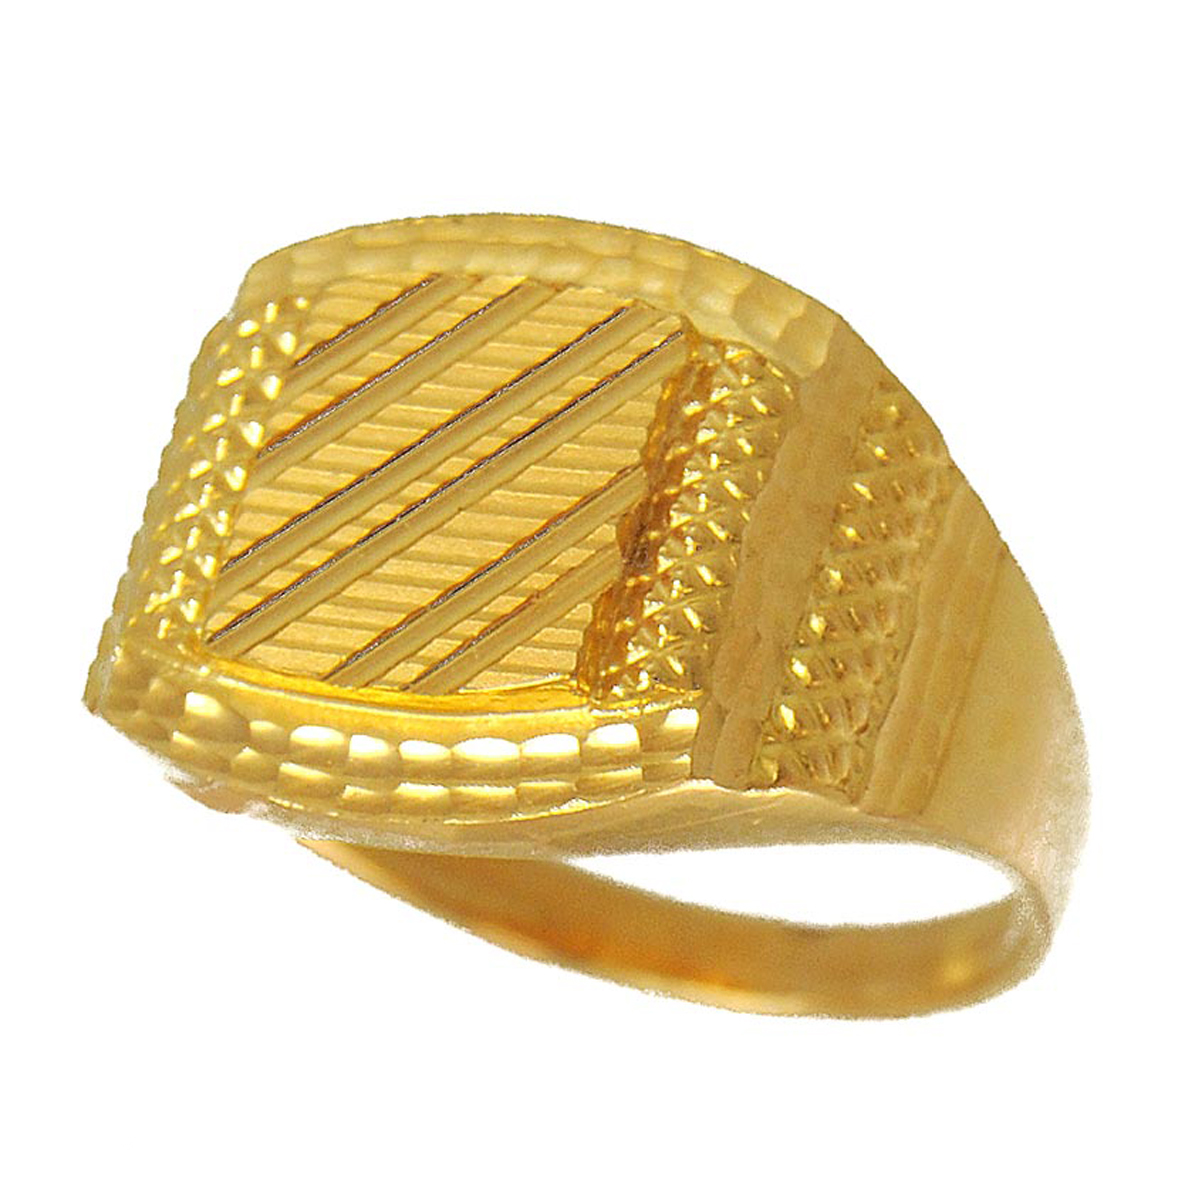 22K Gold Ring For Men - 235-GR5772 in 4.500 Grams